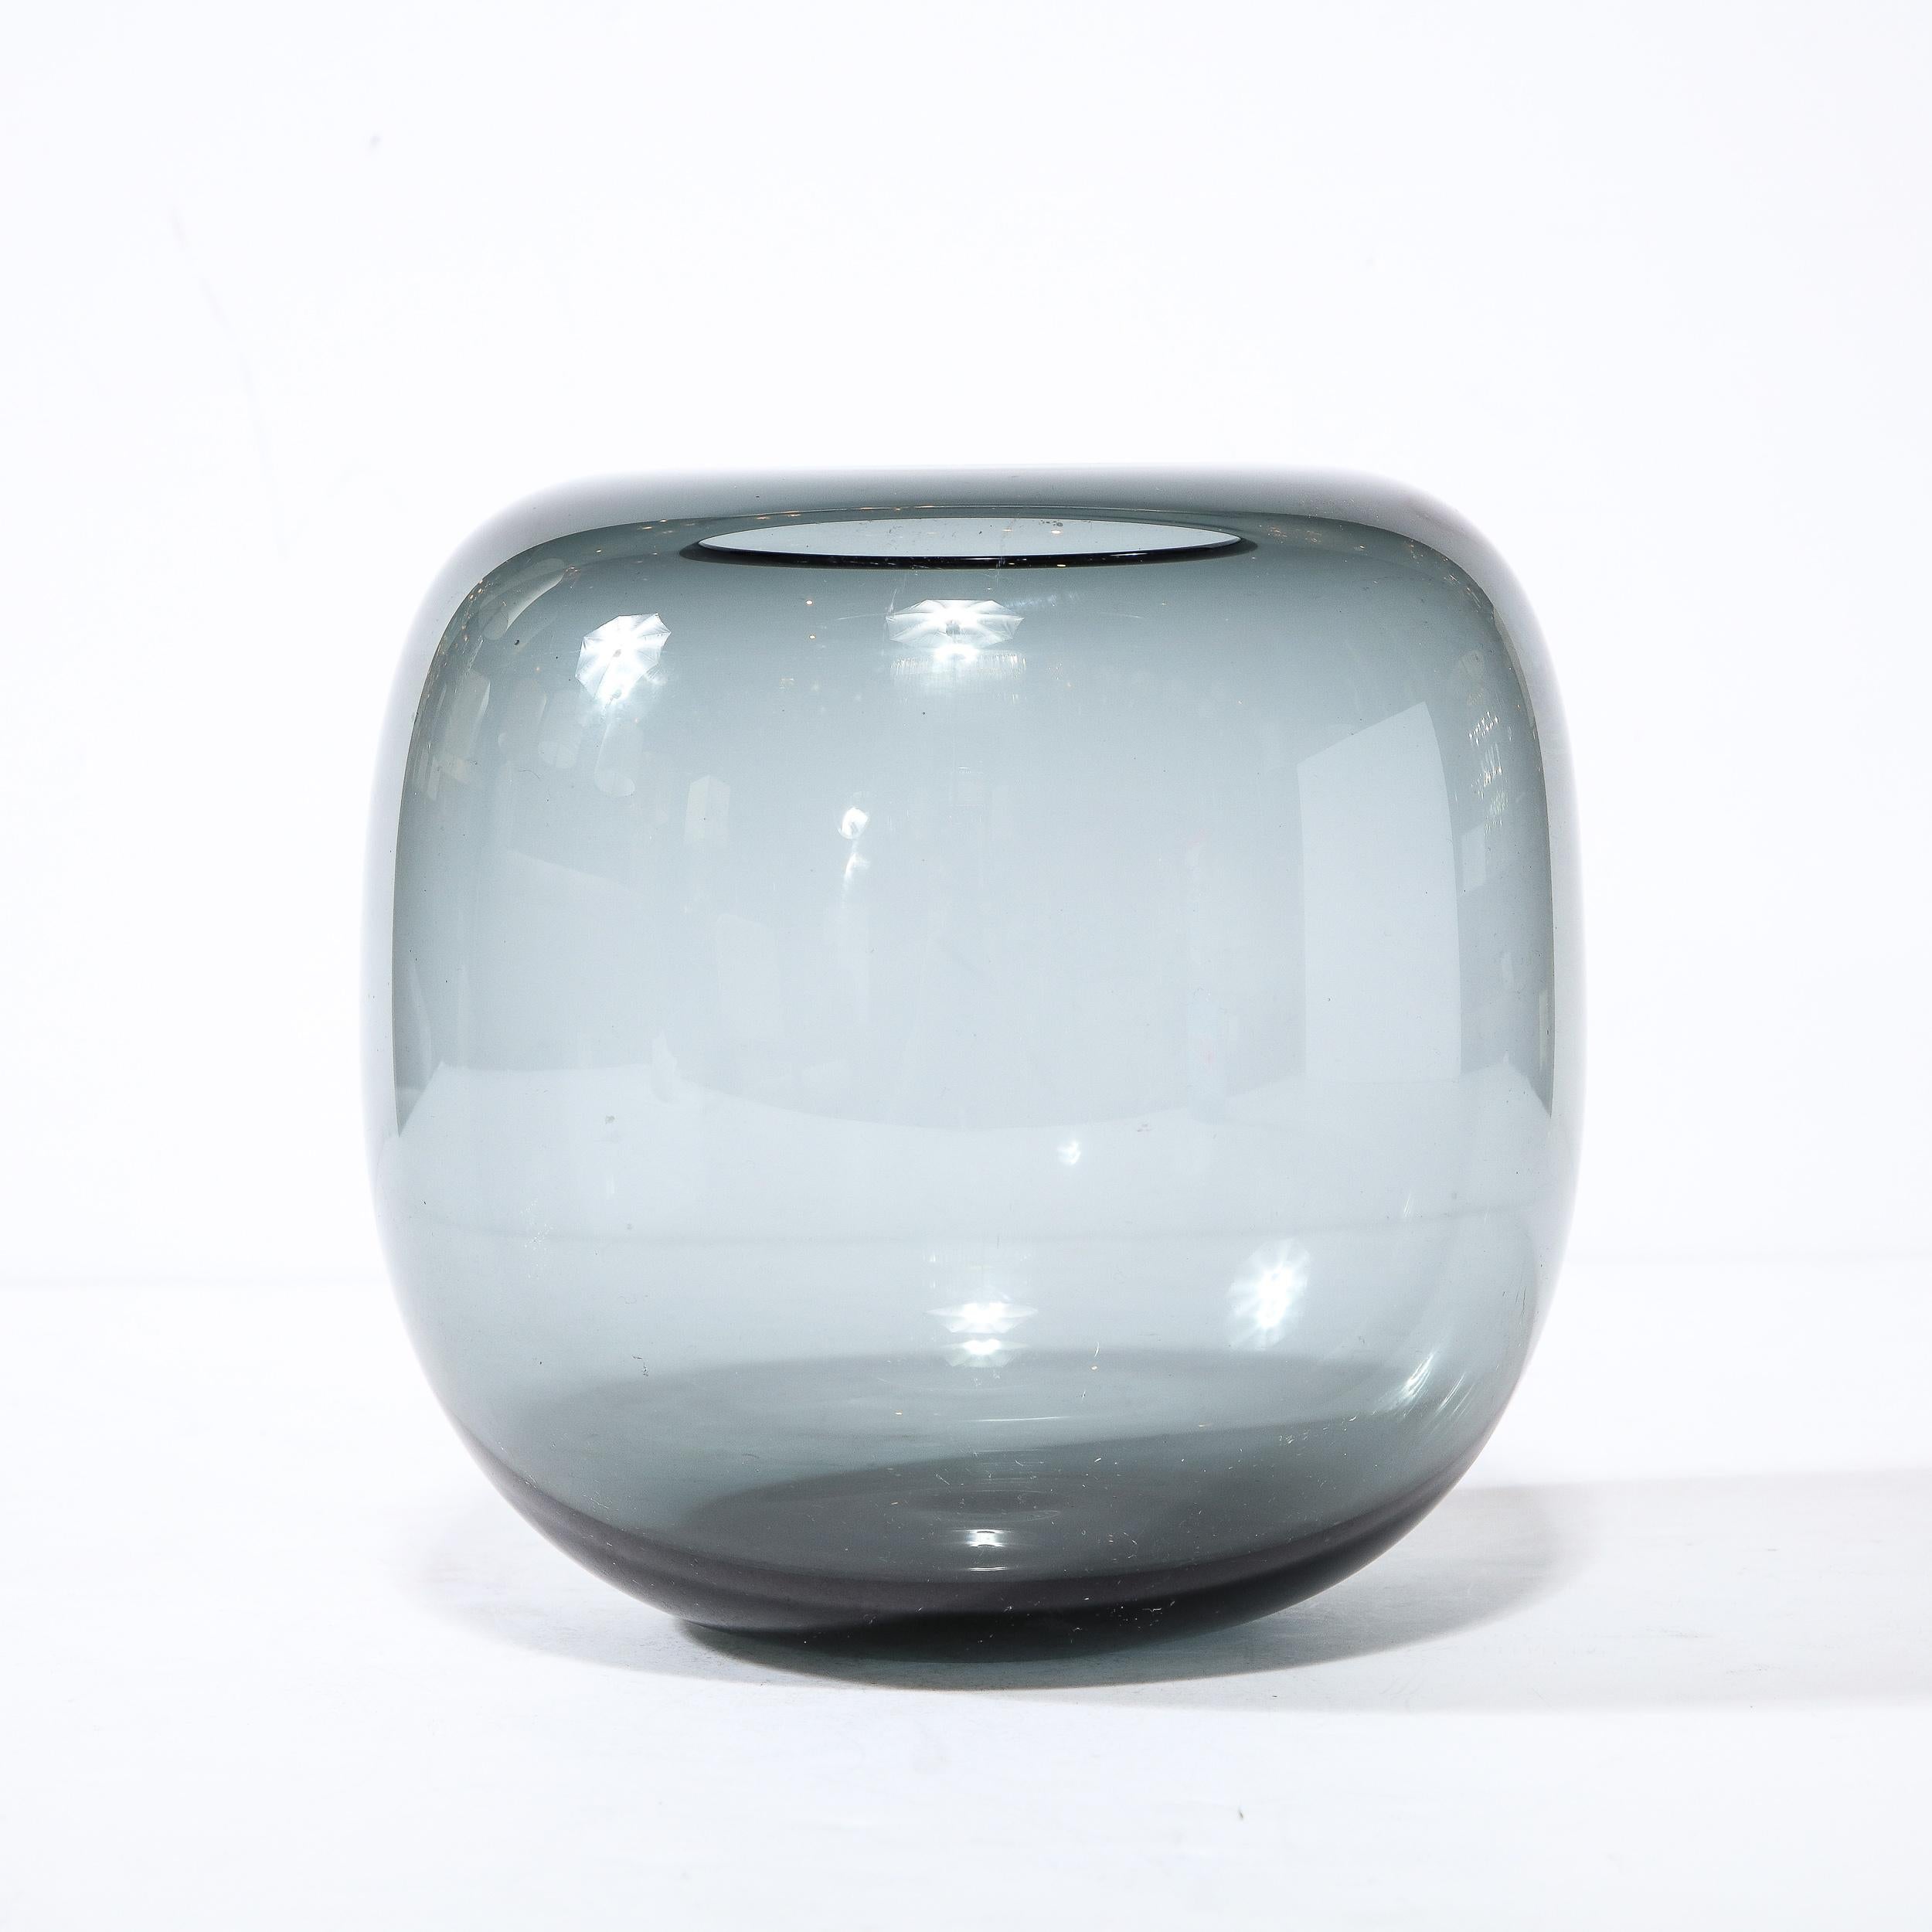 Cet élégant vase de style moderne du milieu du siècle a été réalisé par le célèbre fabricant Holmegaard au Danemark vers 1960. Il offre une forme sphérique allongée avec des épaules arrondies et une bouche circulaire, le tout dans un verre